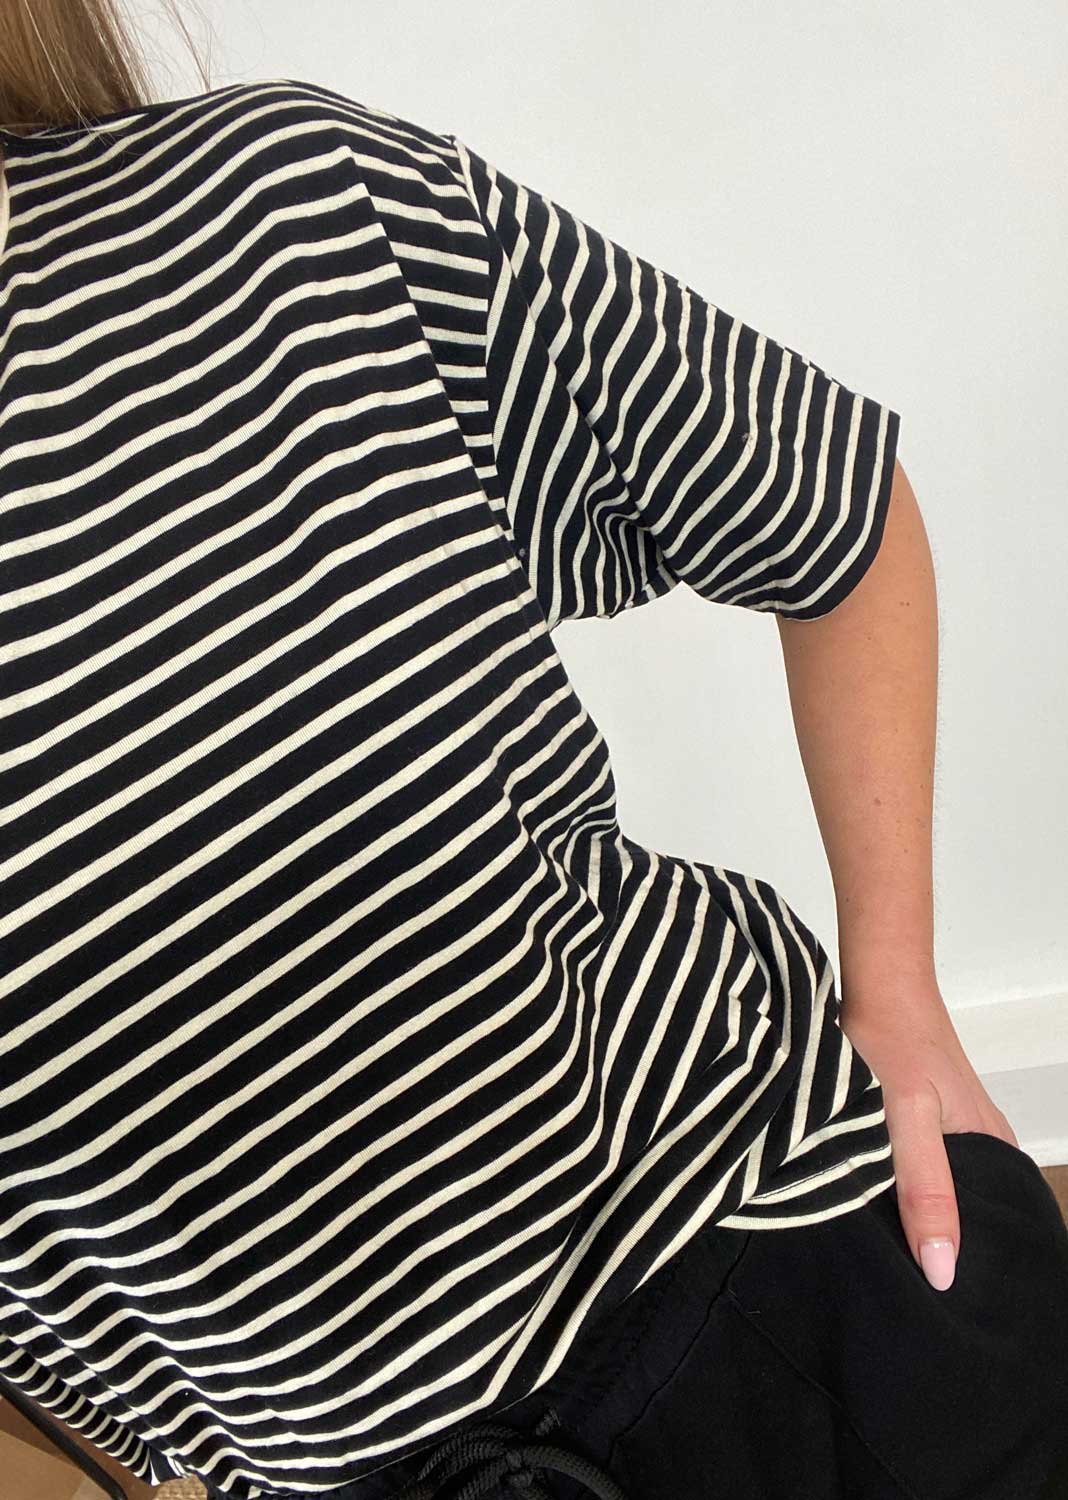 Fiona Premium Stripe Tshirt in Black